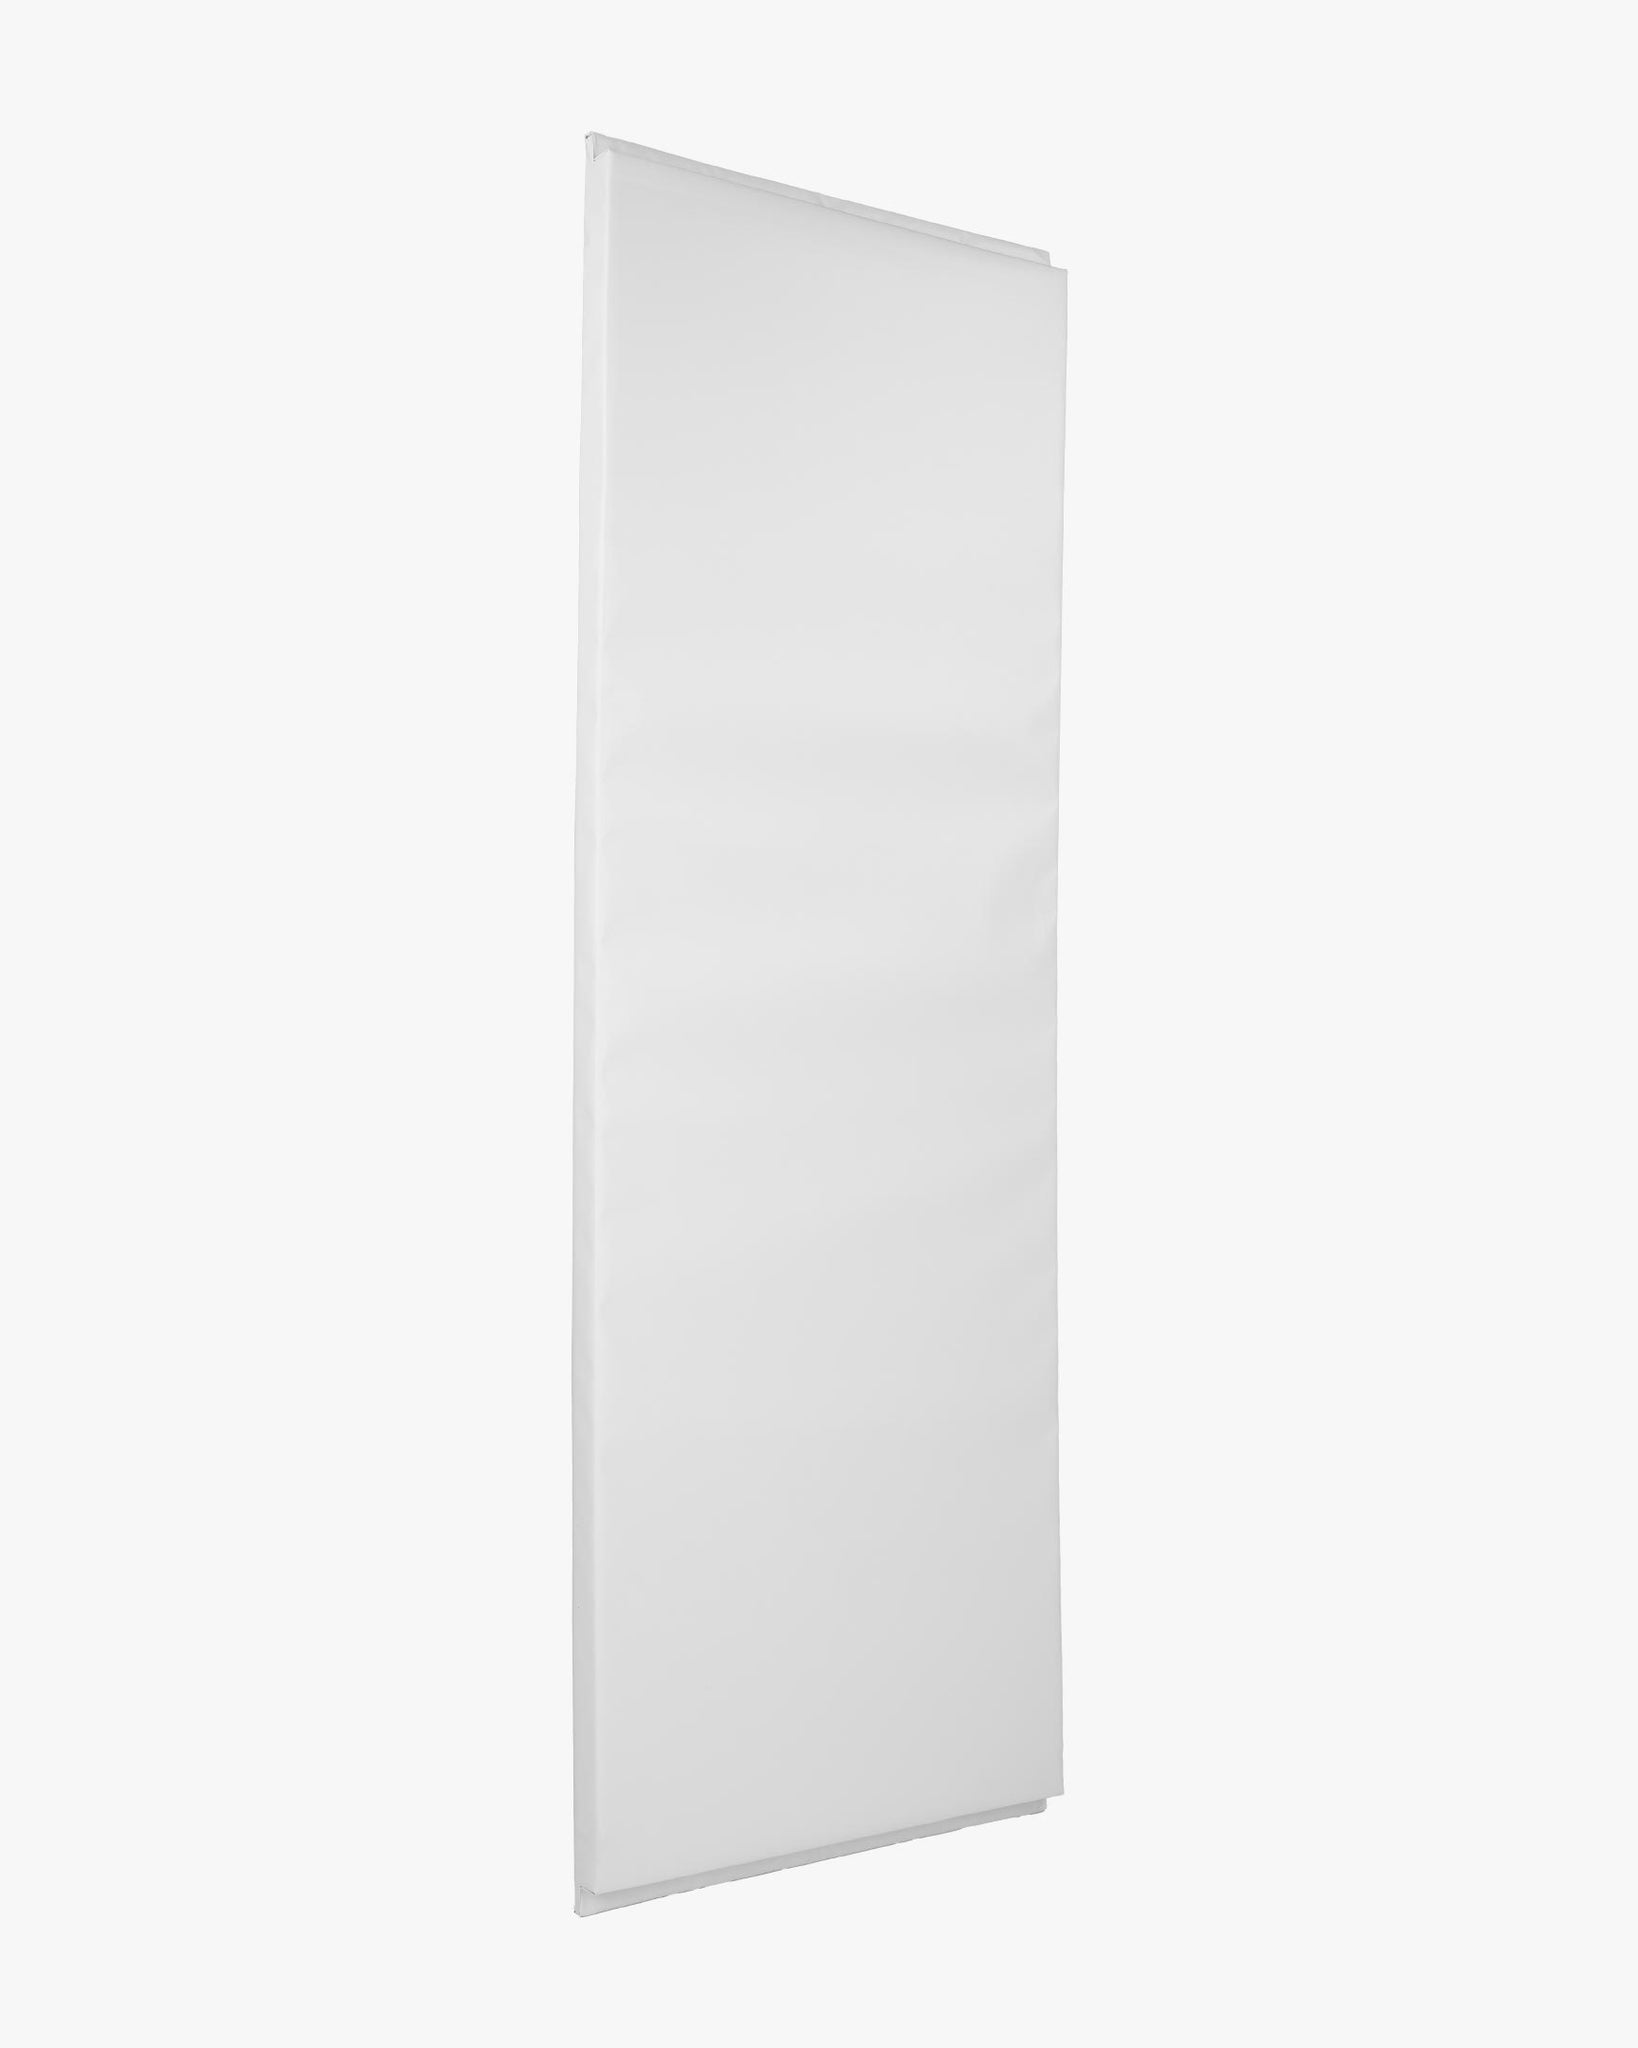 2' X 6' Wall Pad White